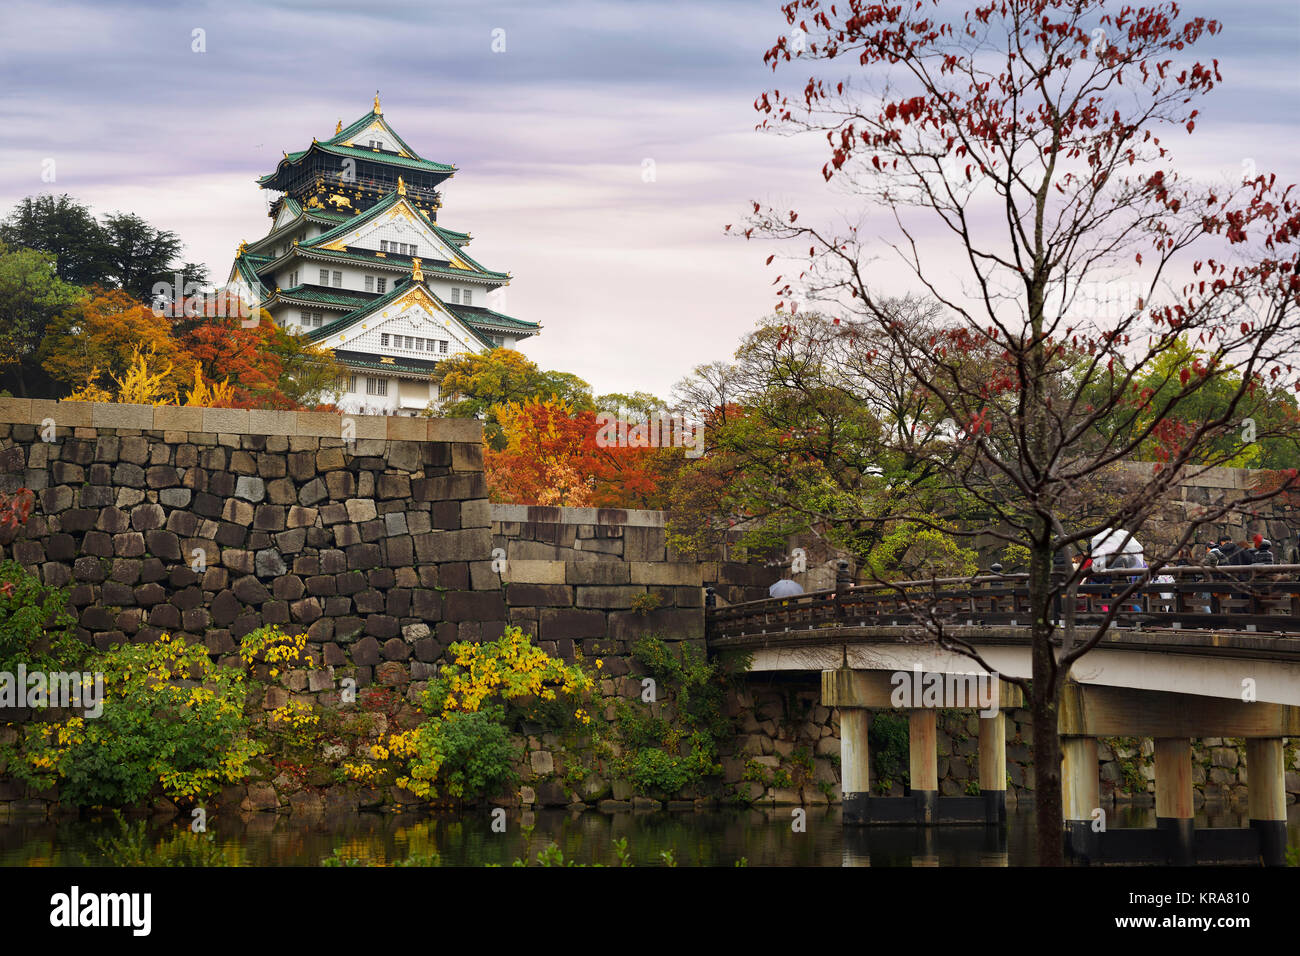 Führerschein und Drucke bei MaximImages.com - Schloss Osaka, Blick auf Osakajo von den gelben Herbstbäumen an einem nebligen Morgen. Osaka Castle Park im Herbst Stockfoto